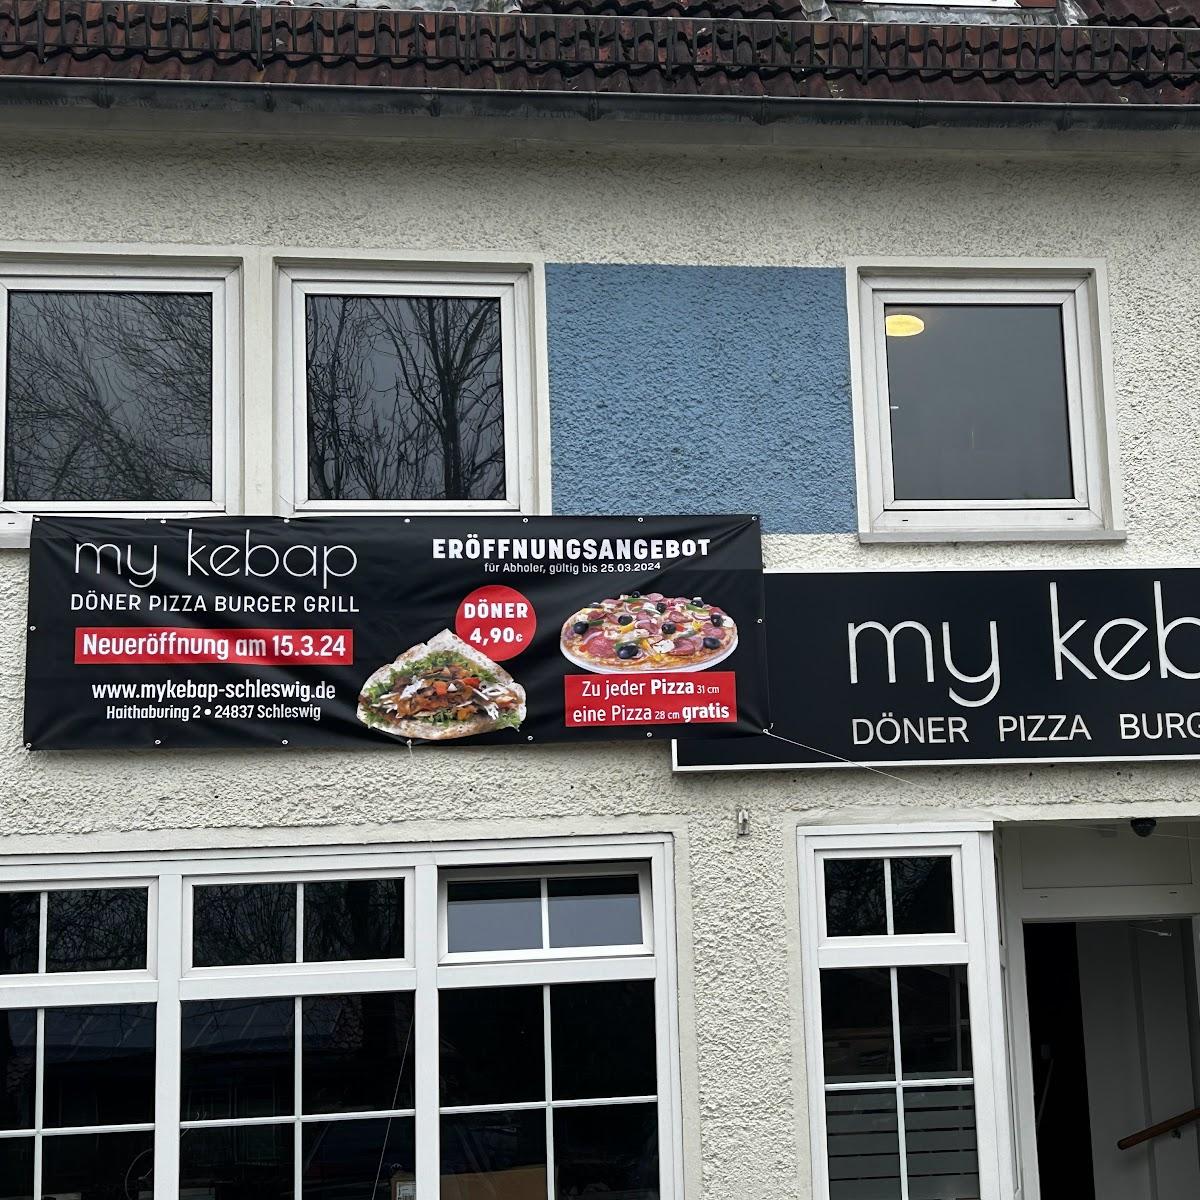 Restaurant "My Kebab" in Schleswig